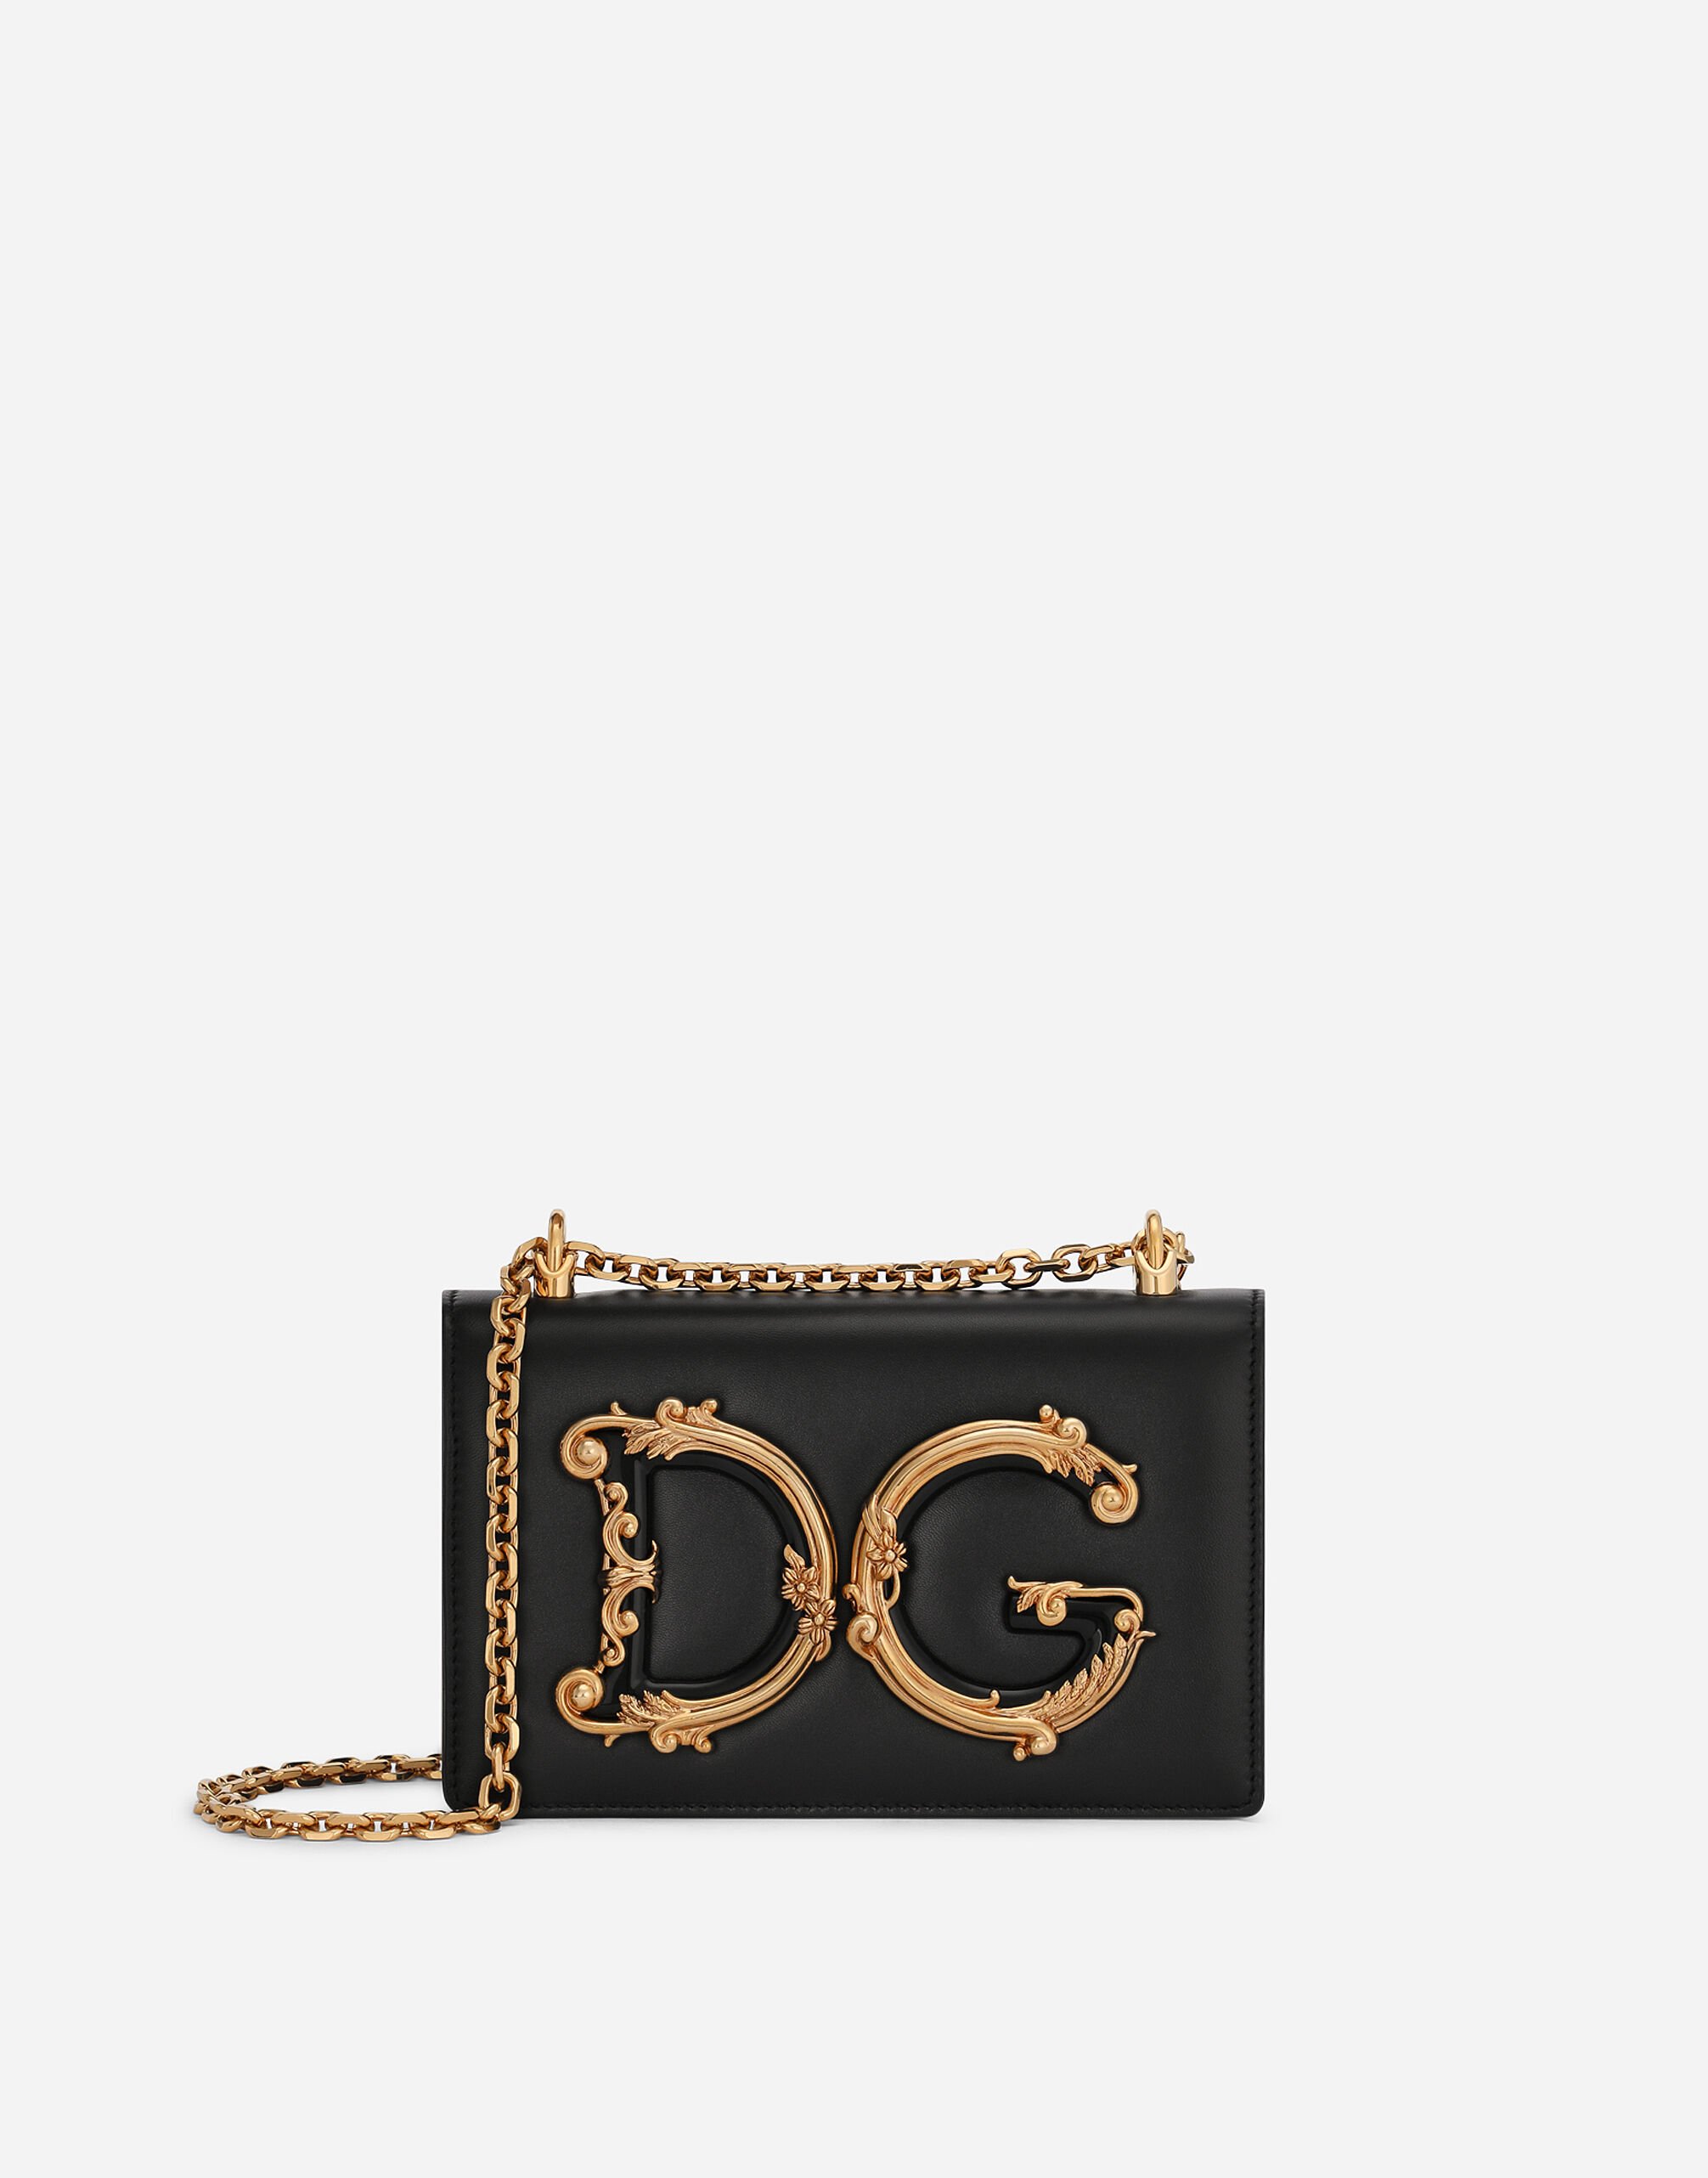 Dolce & Gabbana Nappa leather DG Girls shoulder bag Pink BB6003A1001